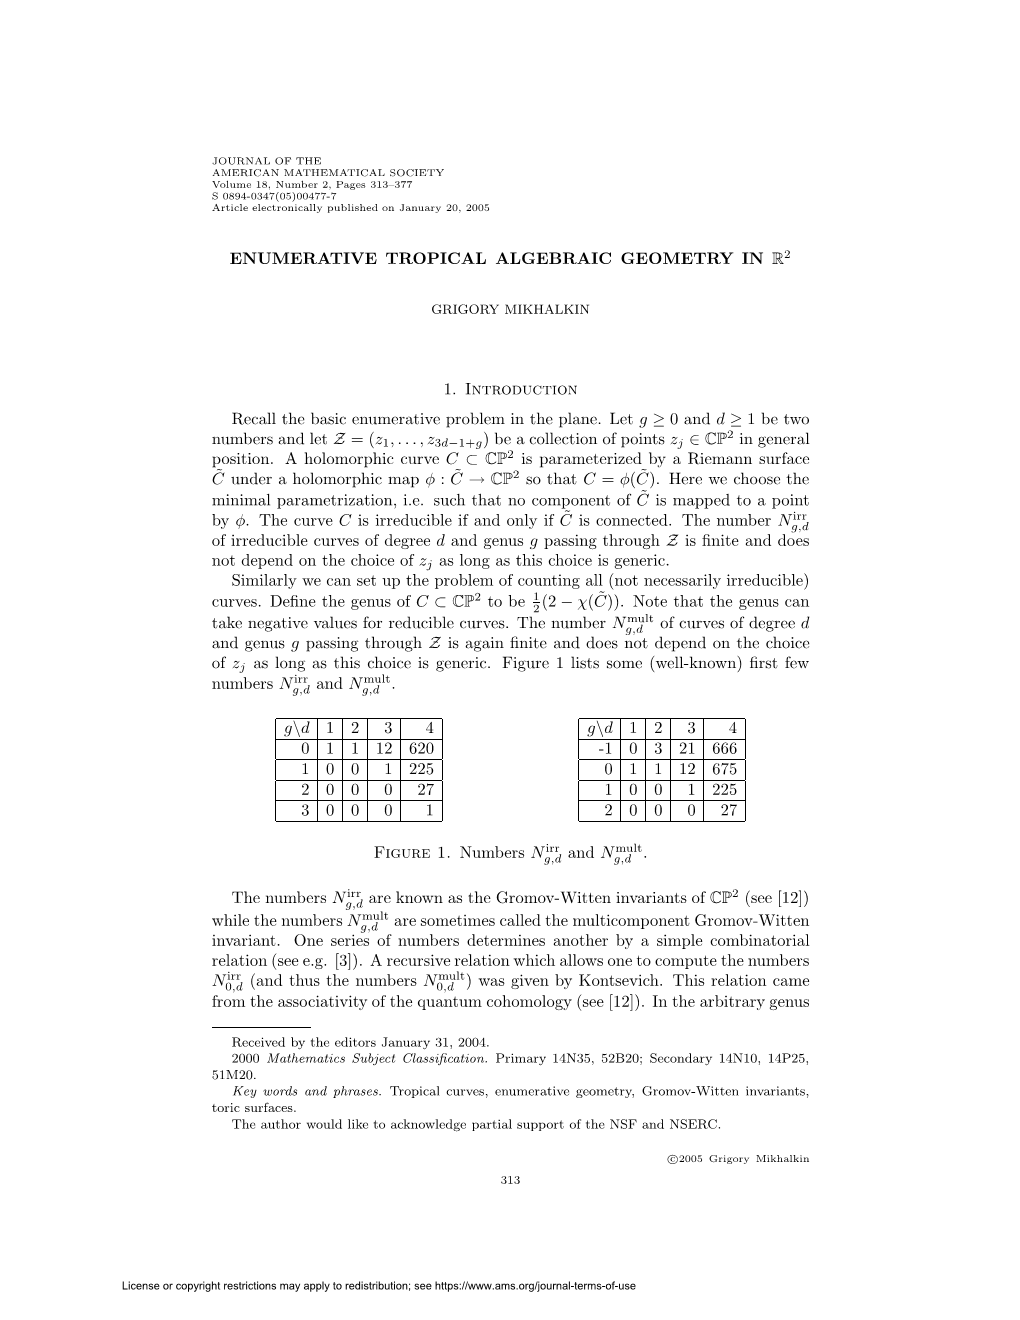 Enumerative Tropical Algebraic Geometry in R2